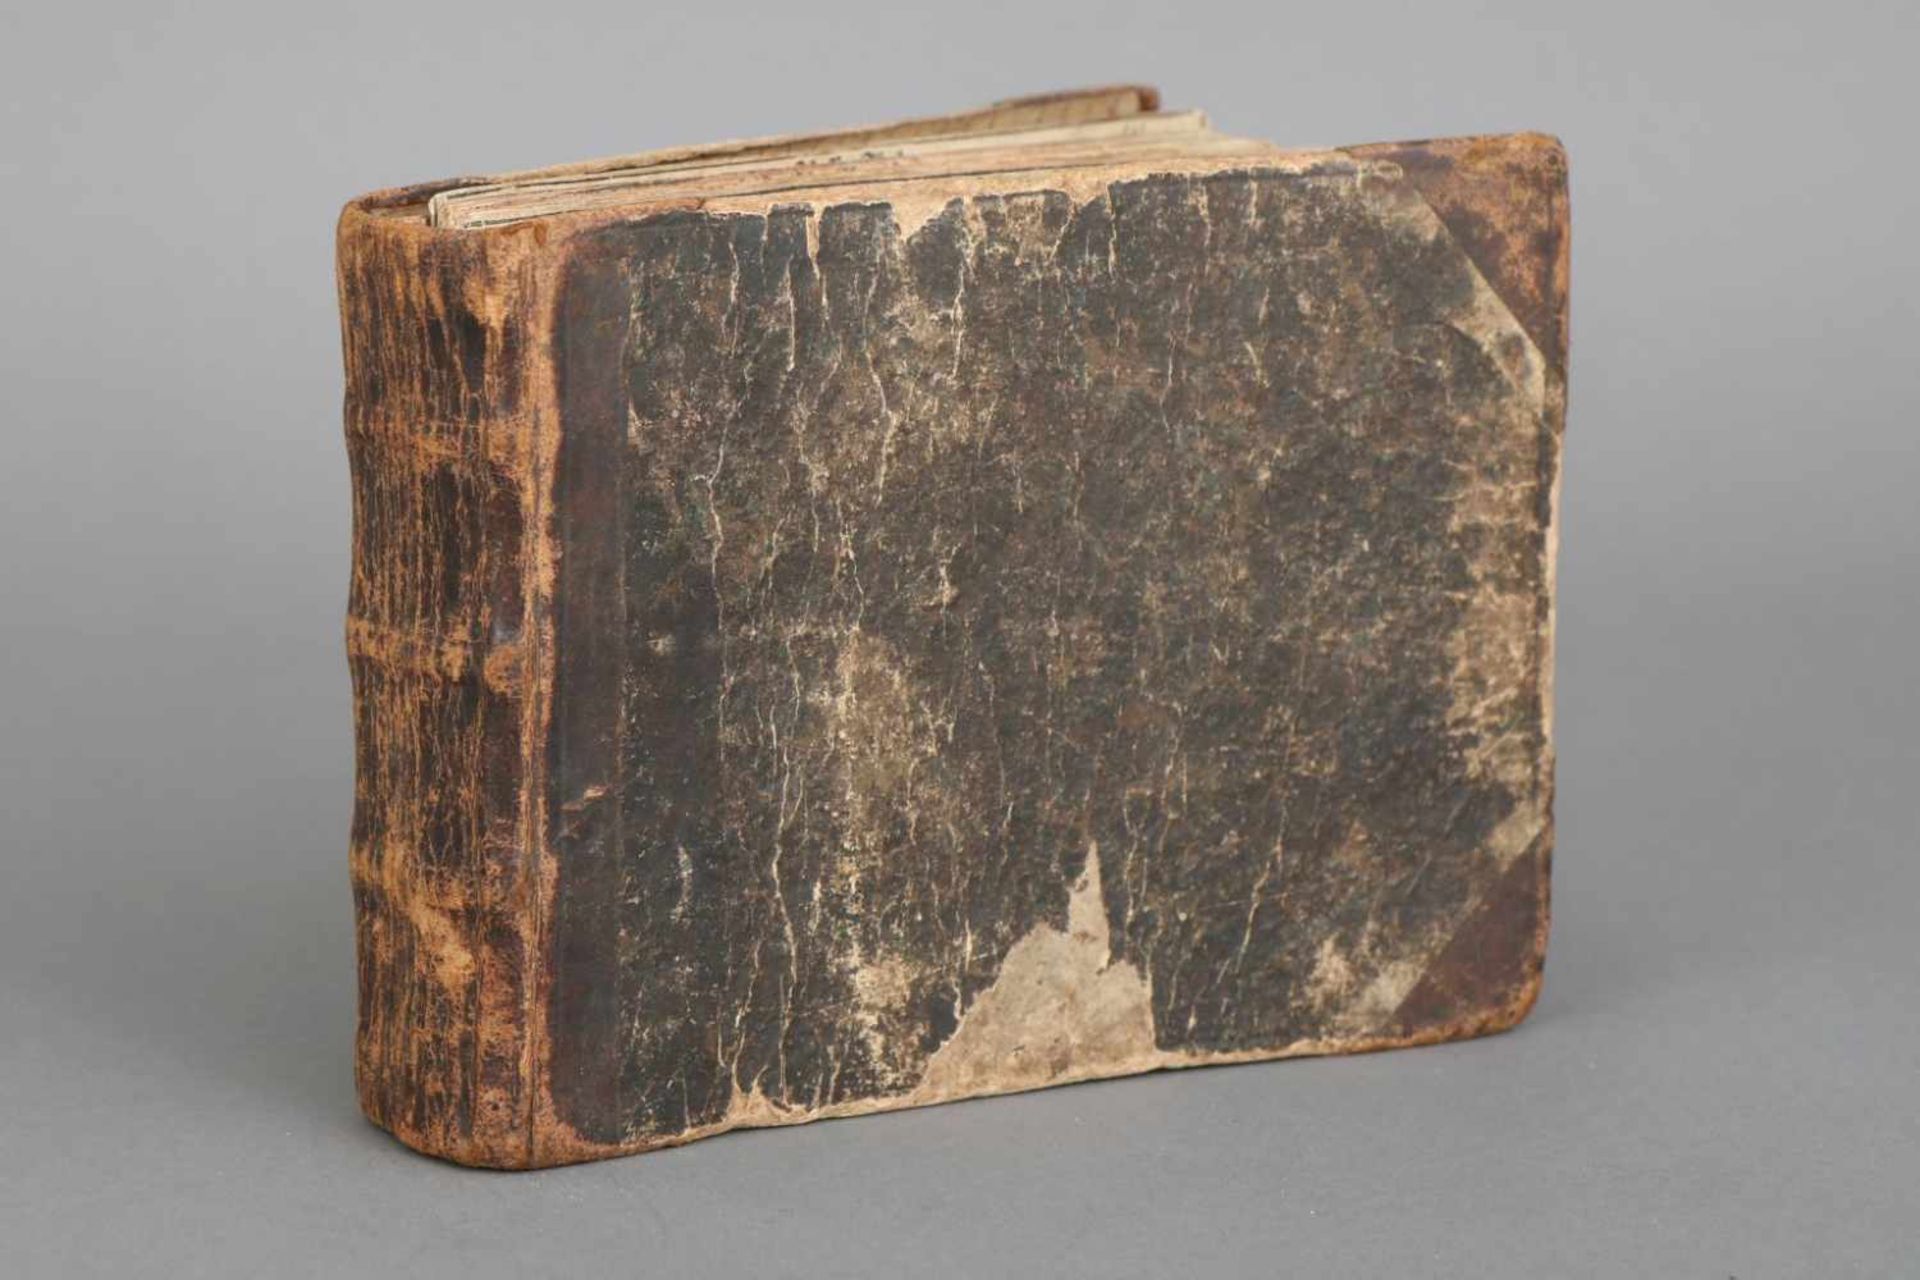 Buch, ¨Historische Chroniken¨17. Jahrhundert, gebundene Sammlung beschnittener Blätter mit - Bild 2 aus 2